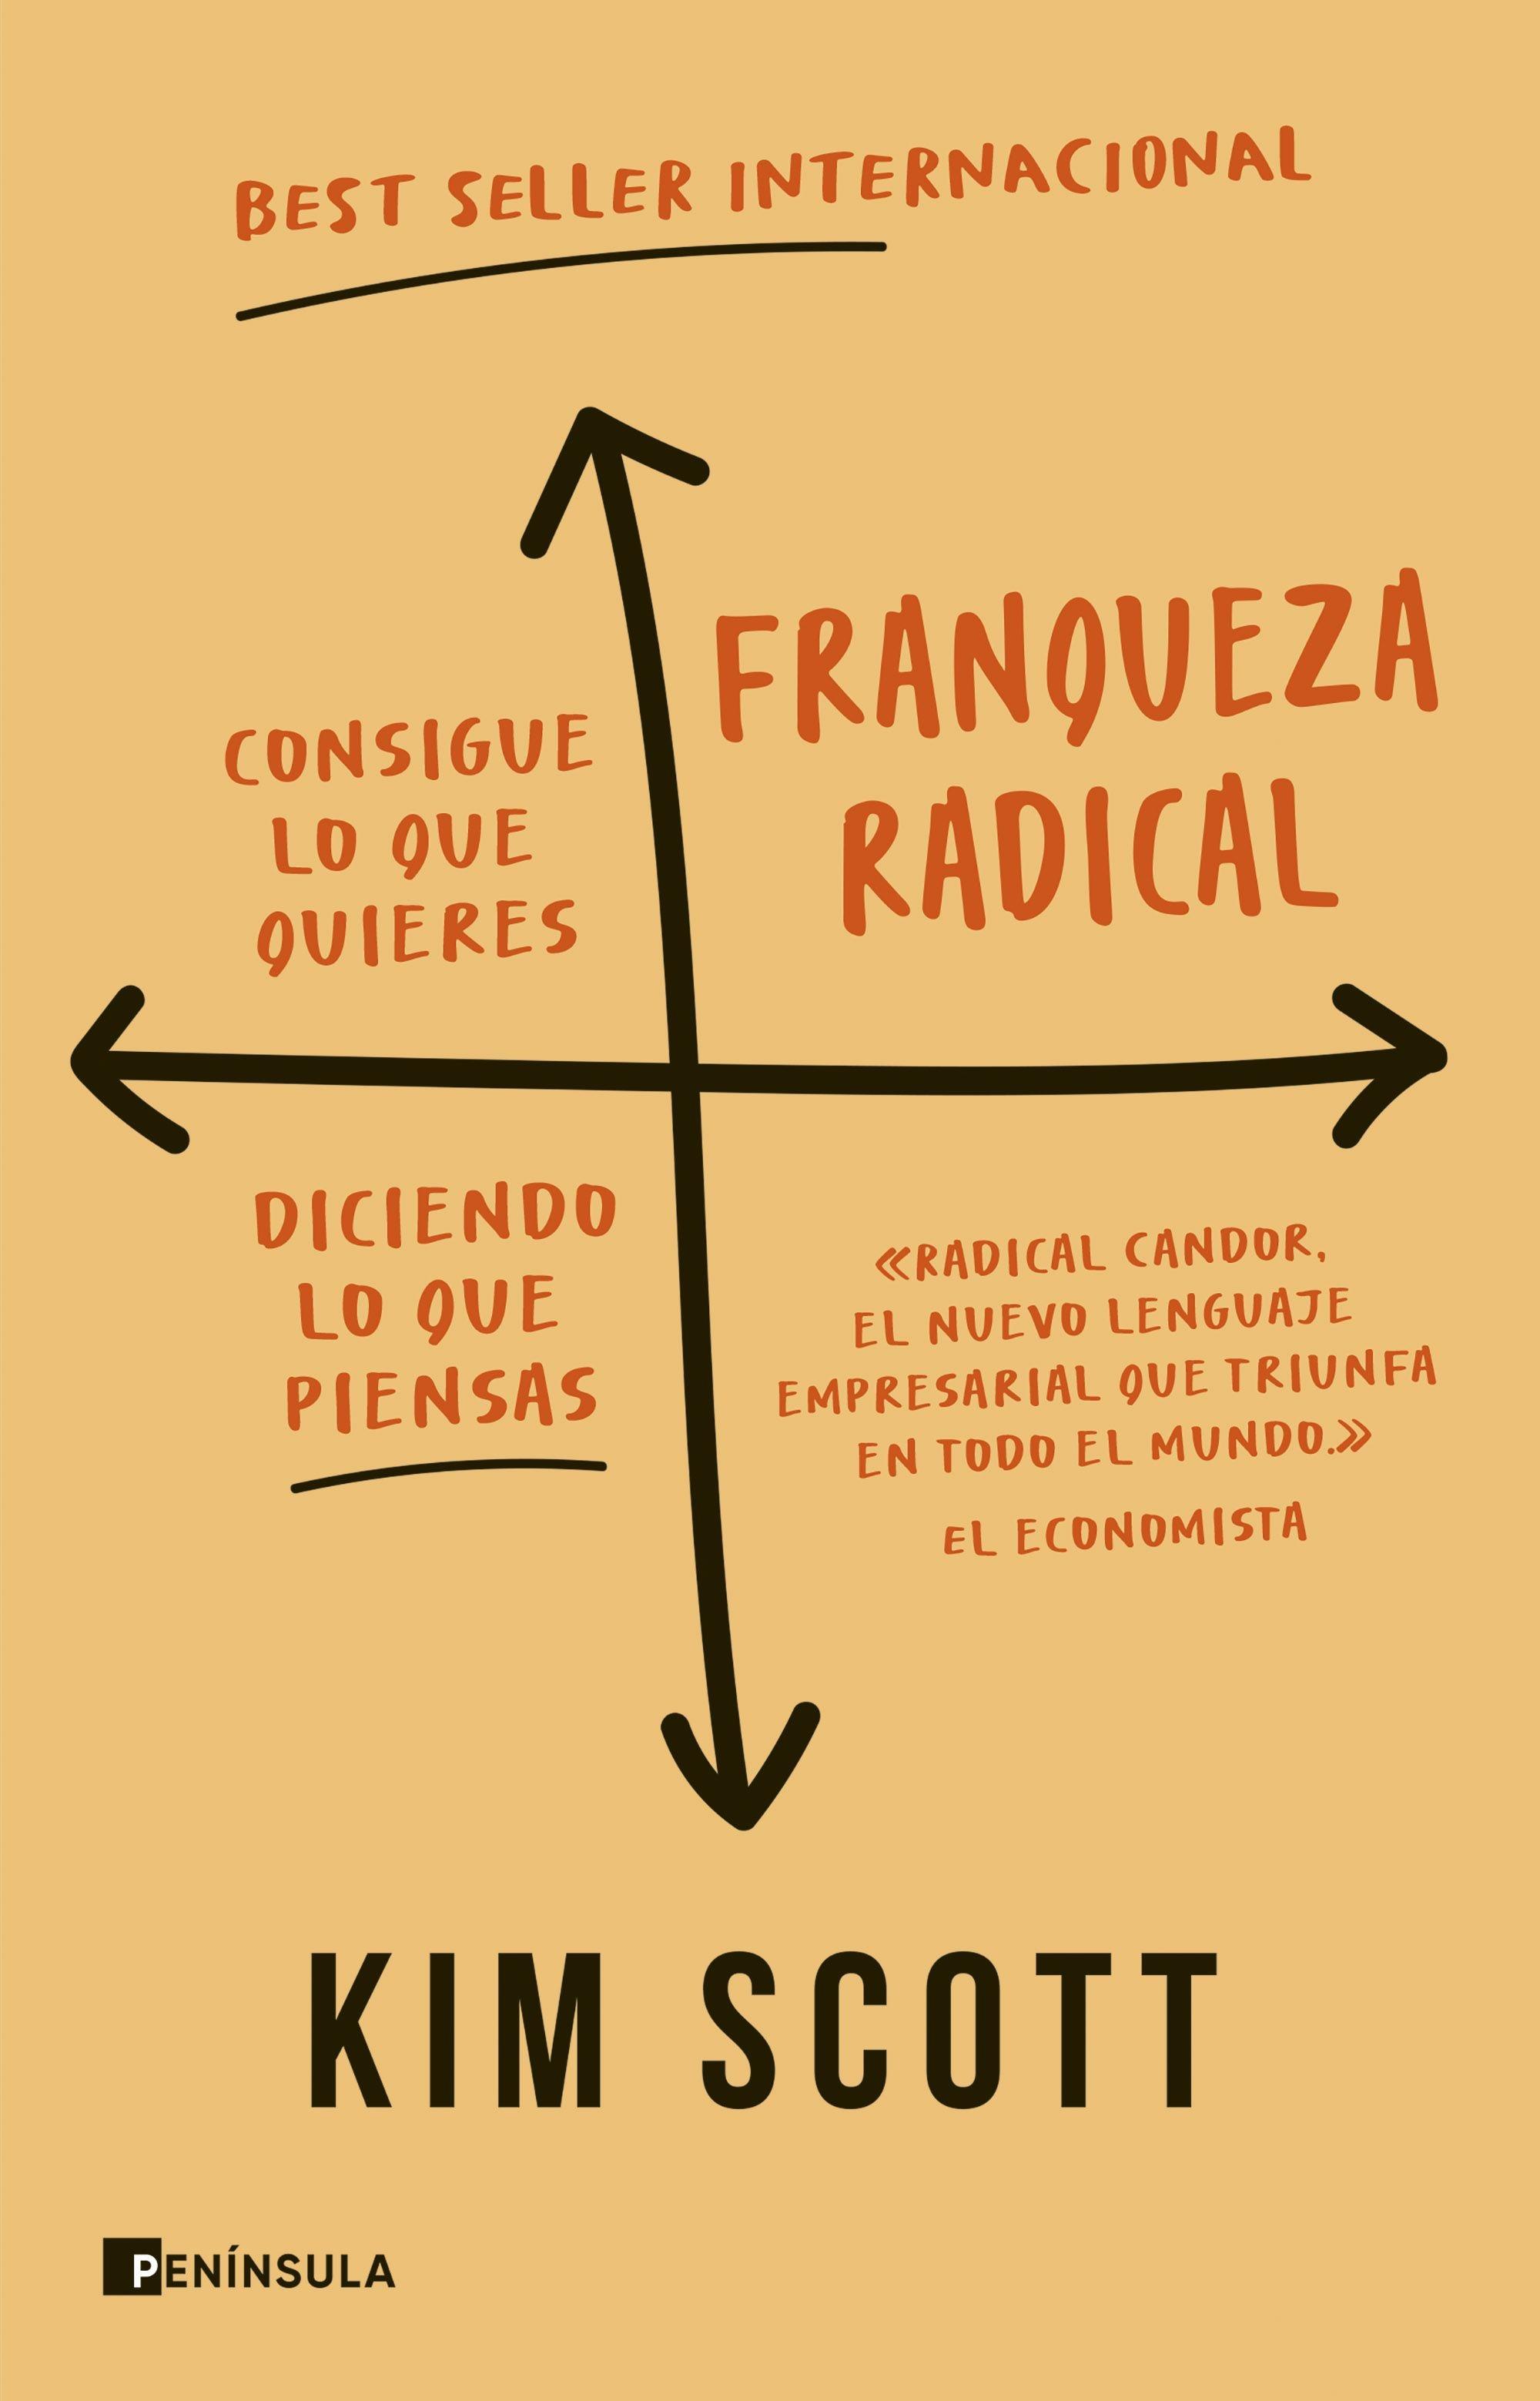 Franqueza Radical "Consigue lo que Quieres Diciendo lo que Piensas". 